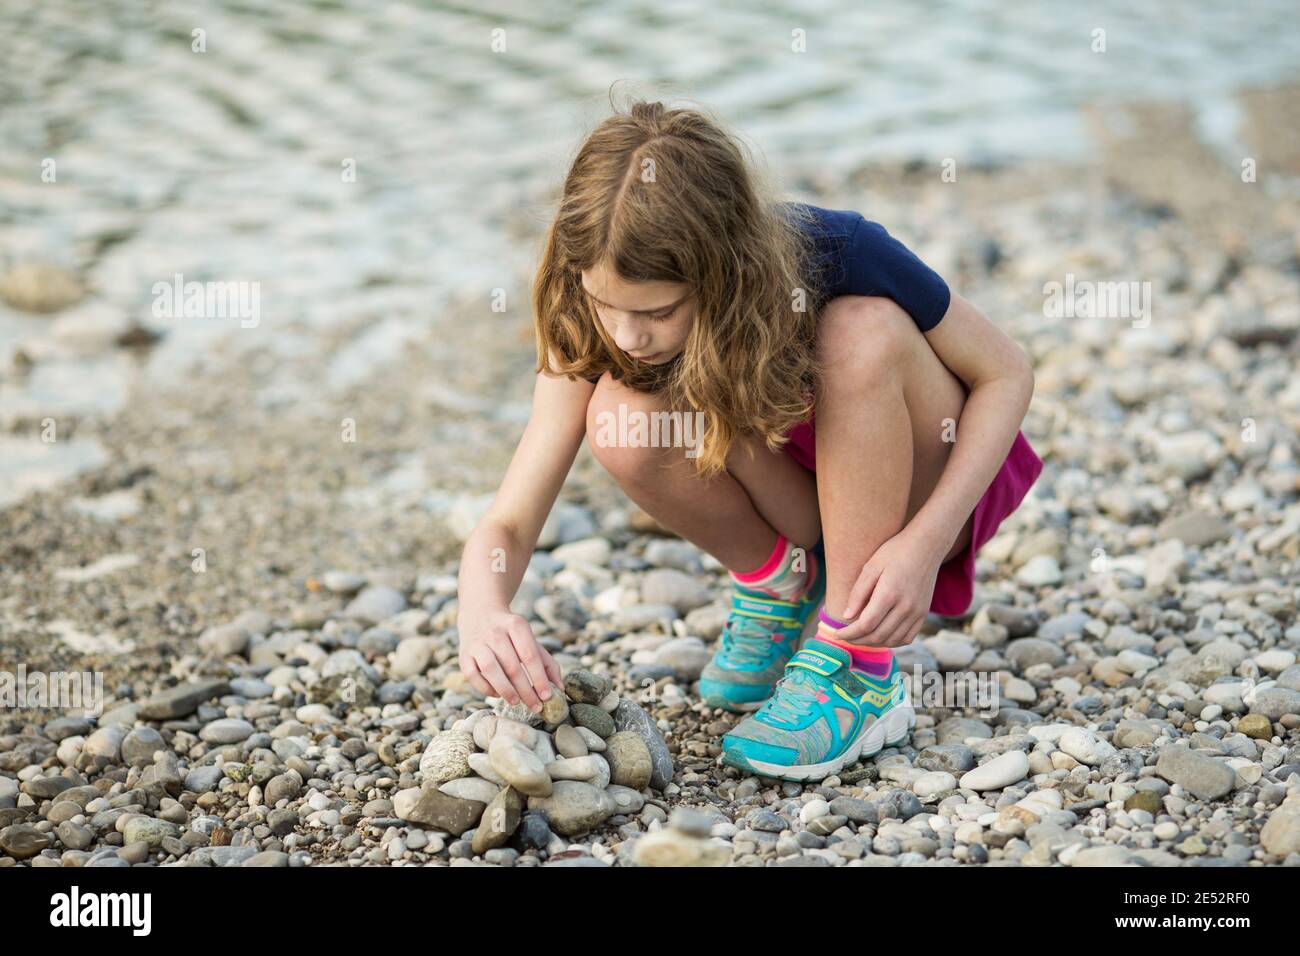 Une jeune fille de 11 ans empile des pierres dans un cairn sur la rive de l'Isar dans la ville de Munich, en Allemagne. Banque D'Images